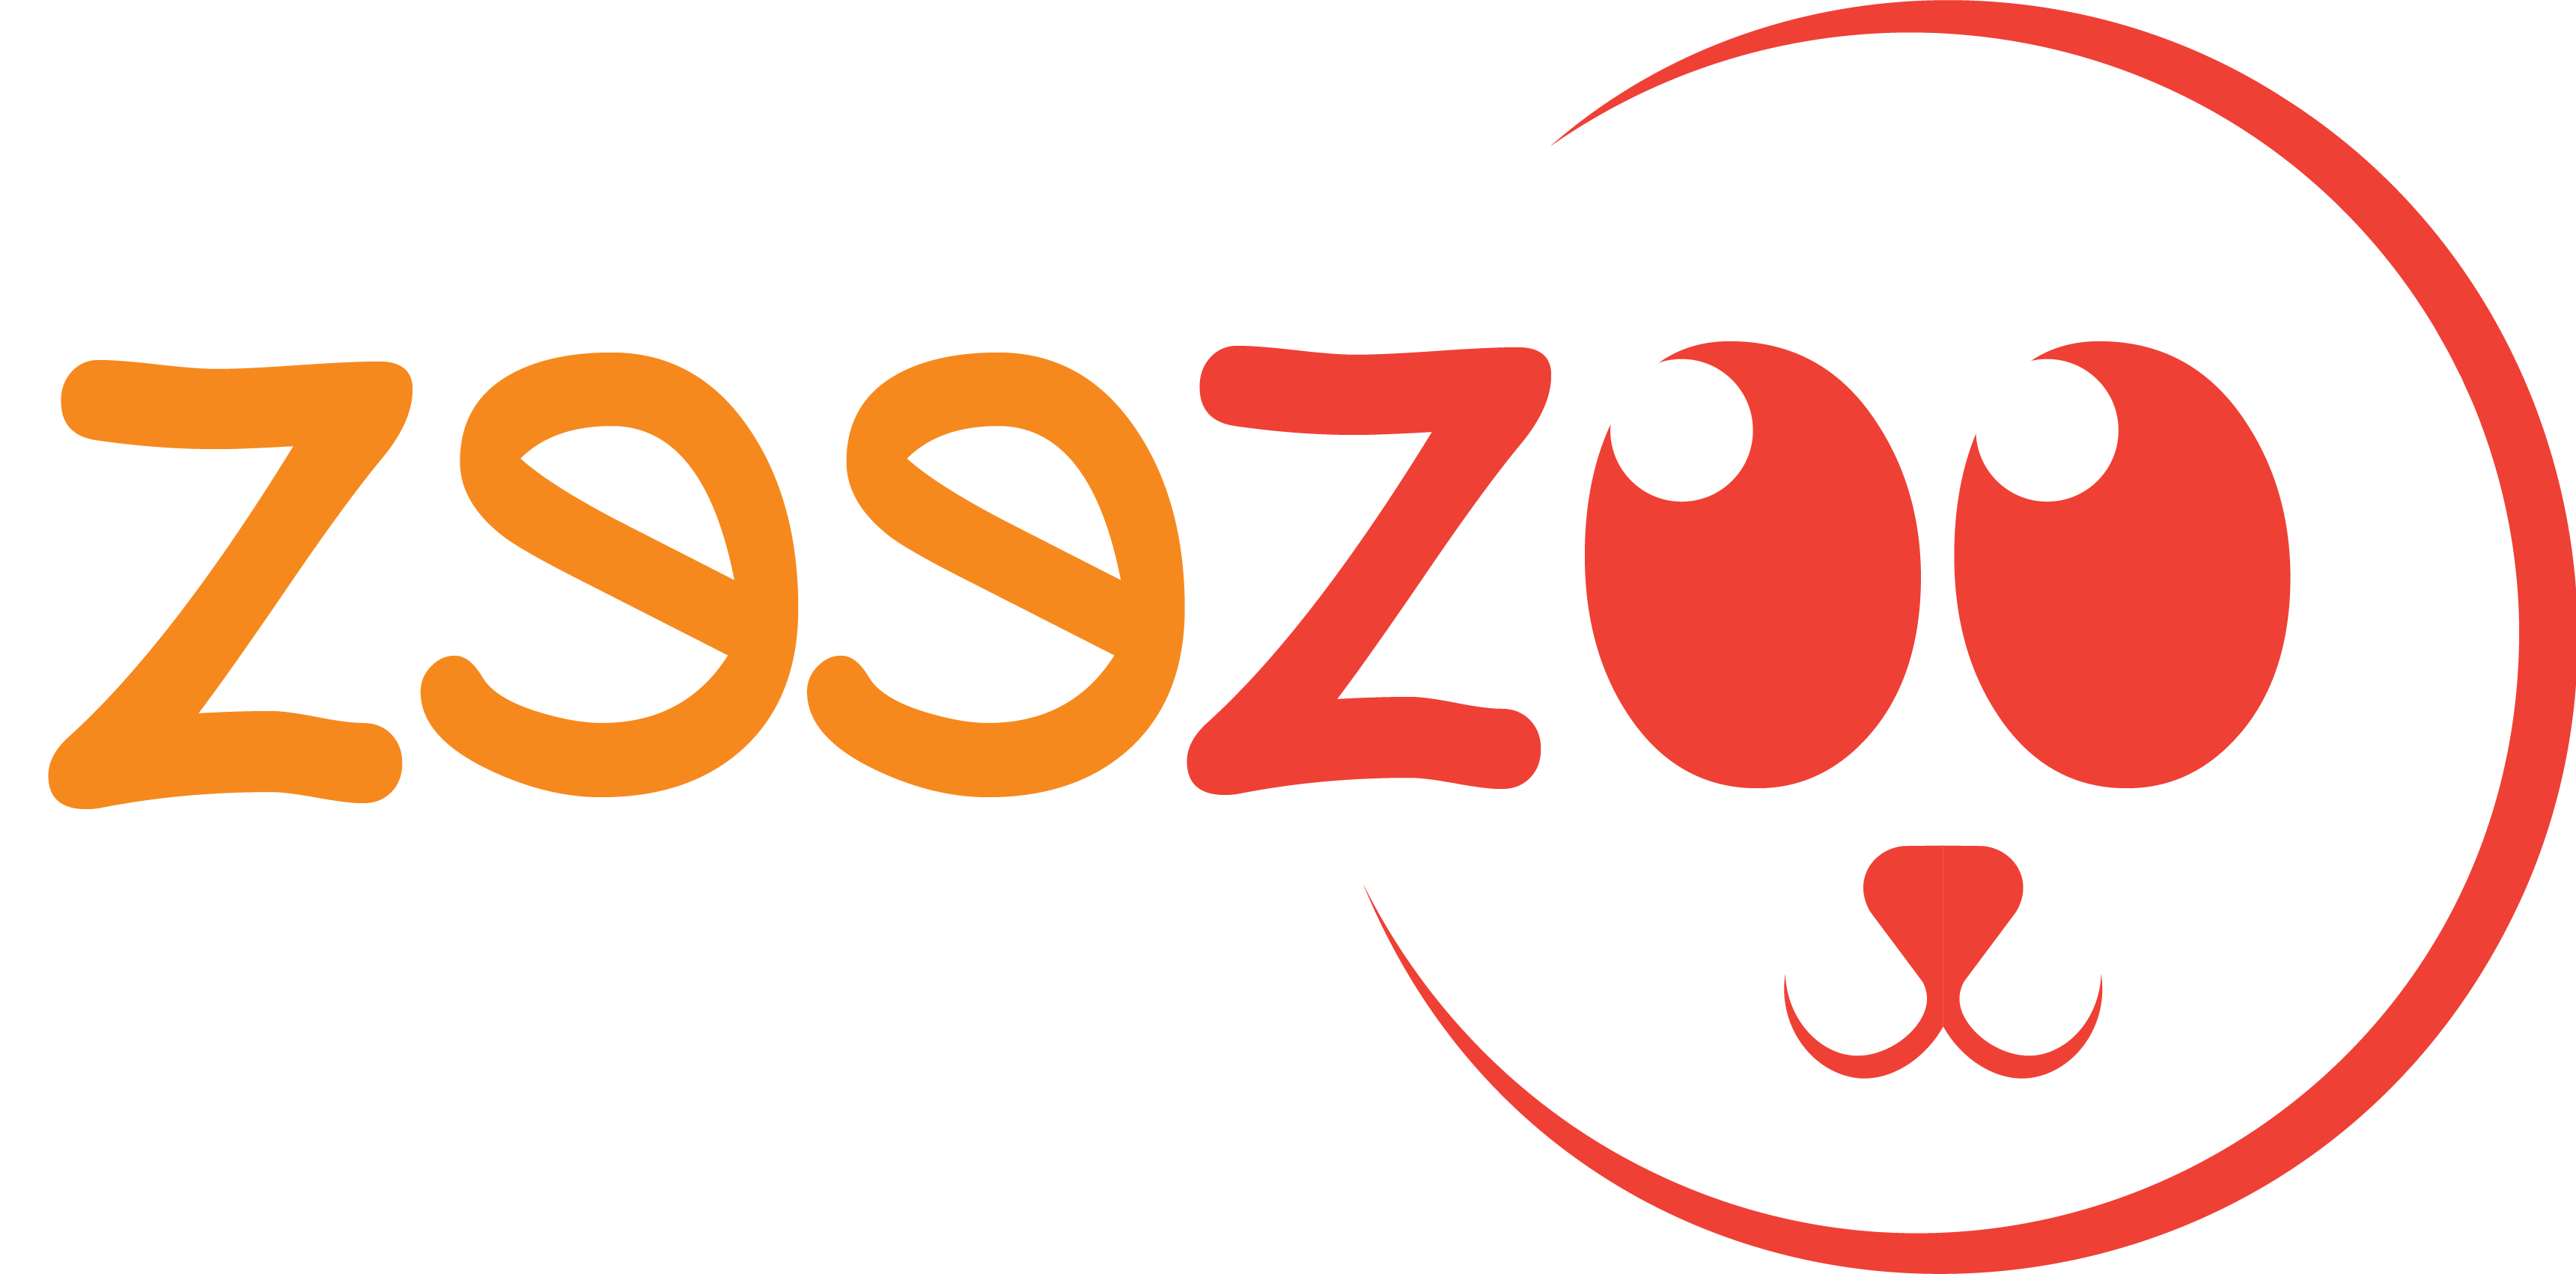 ZeeZoo